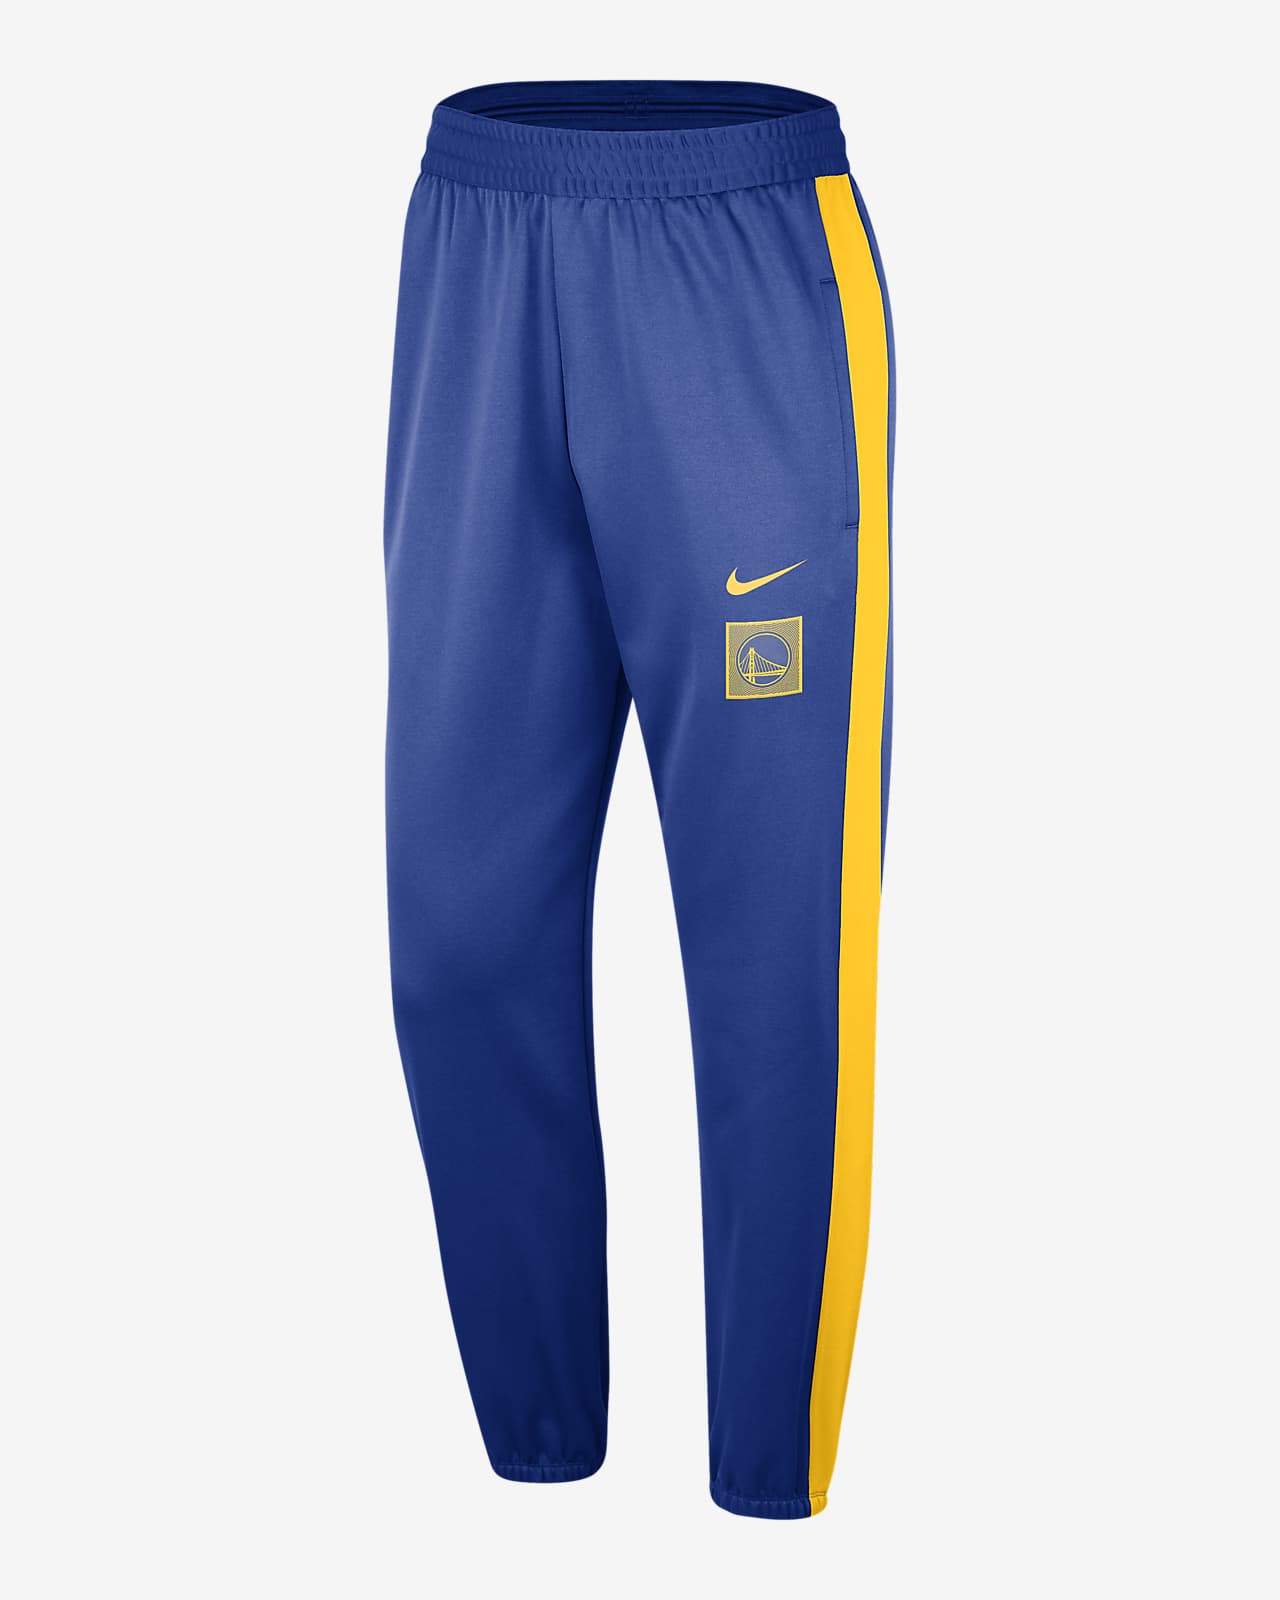 Zipway NBA Men's Golden State Warriors Performance Tear-Away Pants